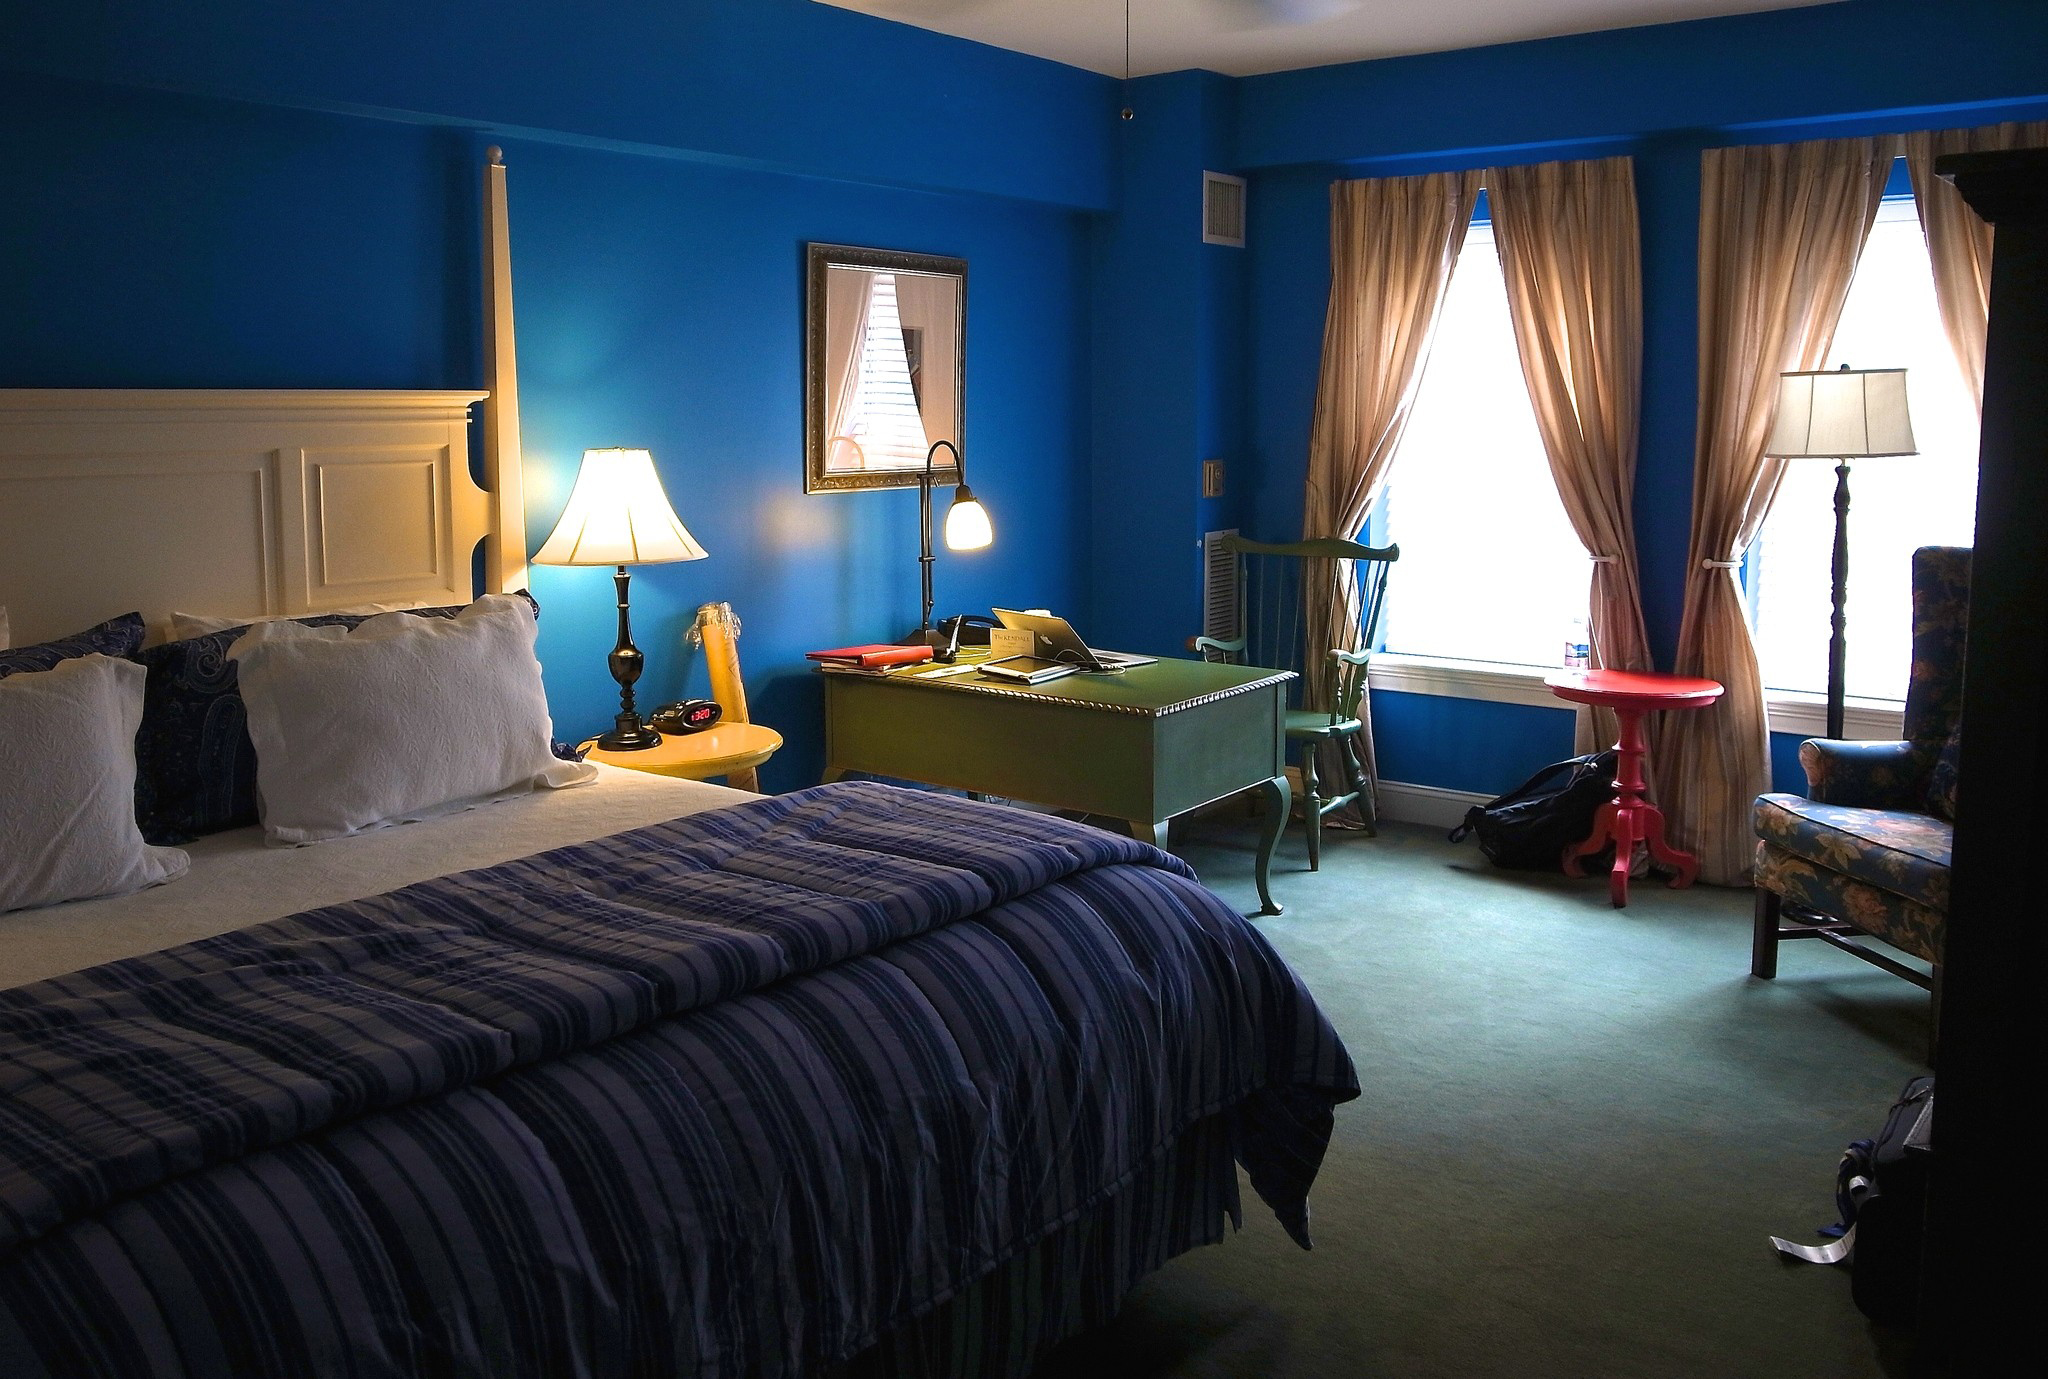 Messages rooms. Синяя спальня. Комната с синими стенами. Спальня в синих тонах. Комната с синими обоями.